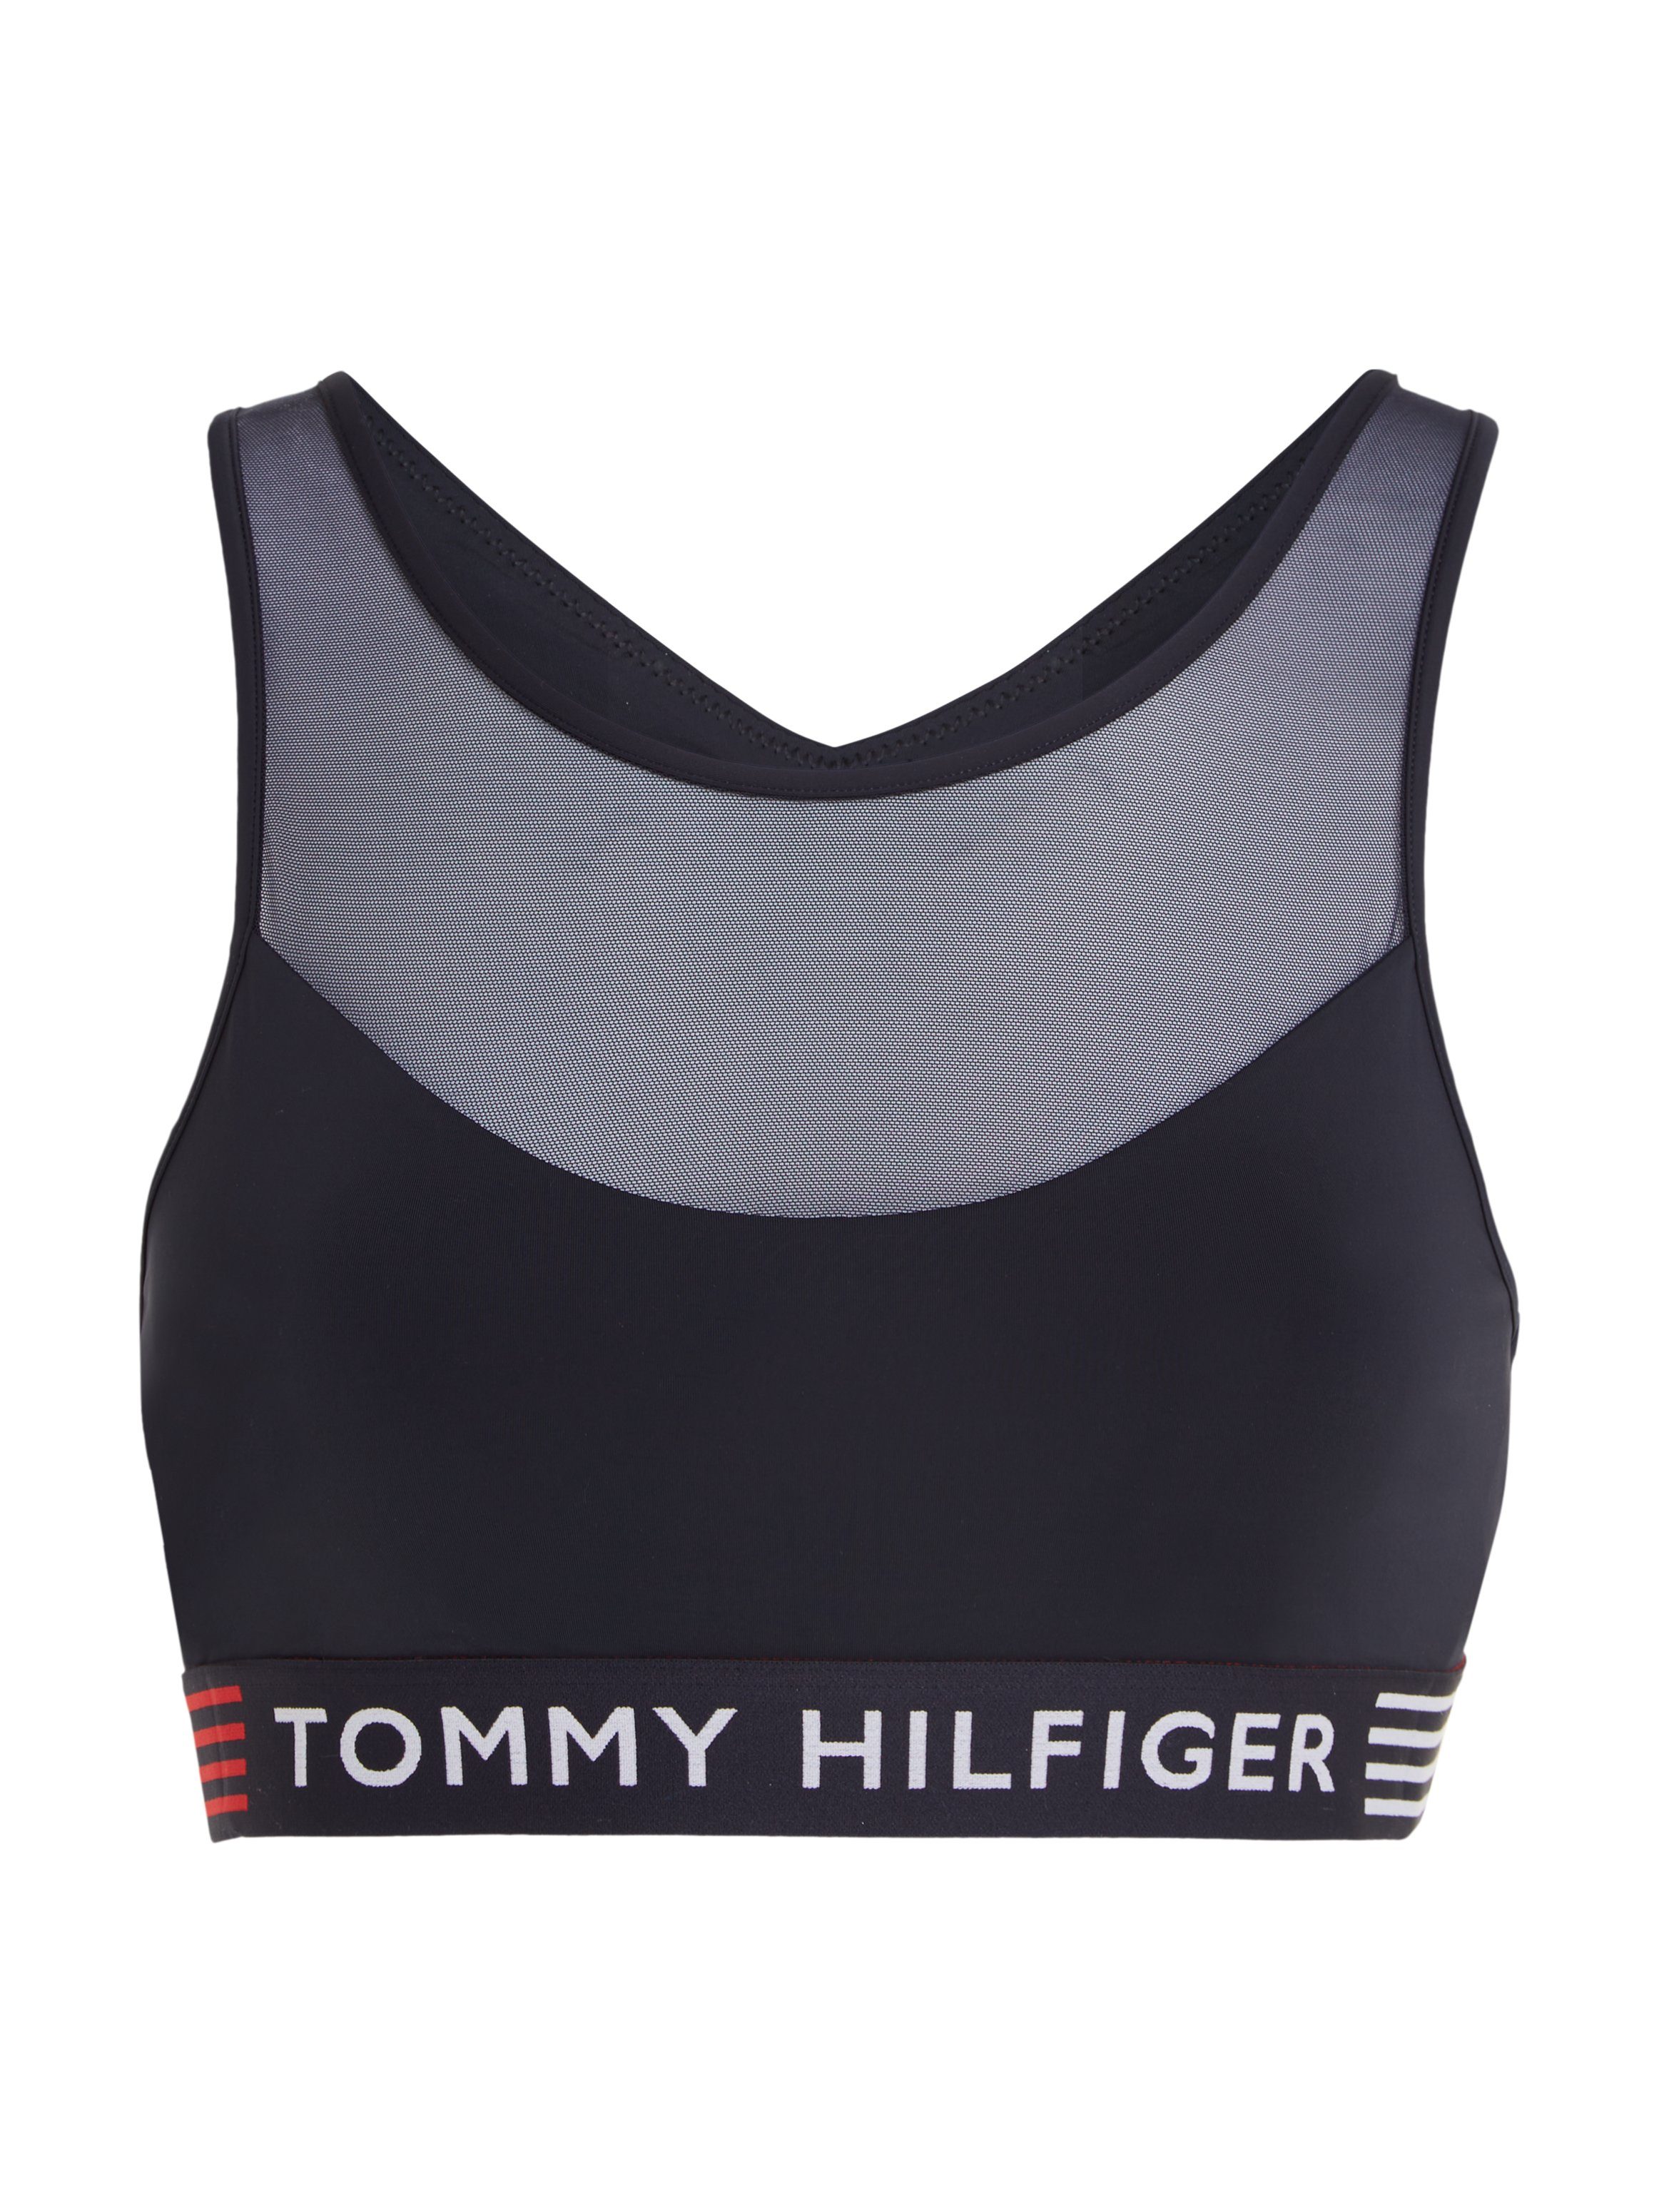 Tommy Hilfiger Underwear Bralette UNLINED Mesh-Einsatz BRALETTE mit Tommy & Hilfiger Loo-Elastiktape